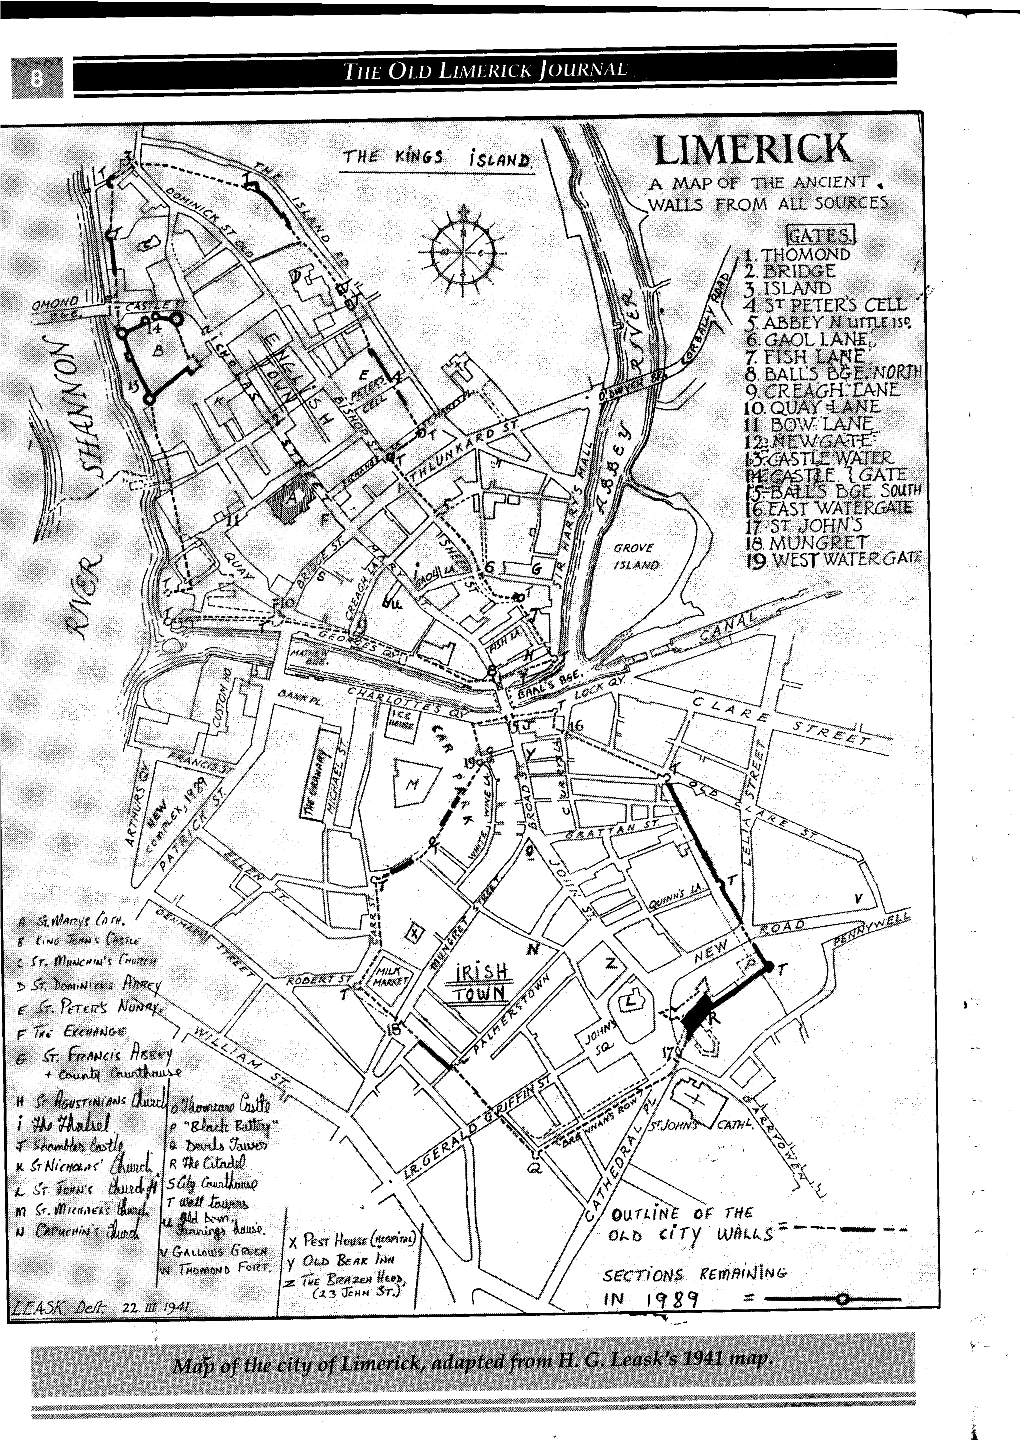 Limerick in 1689